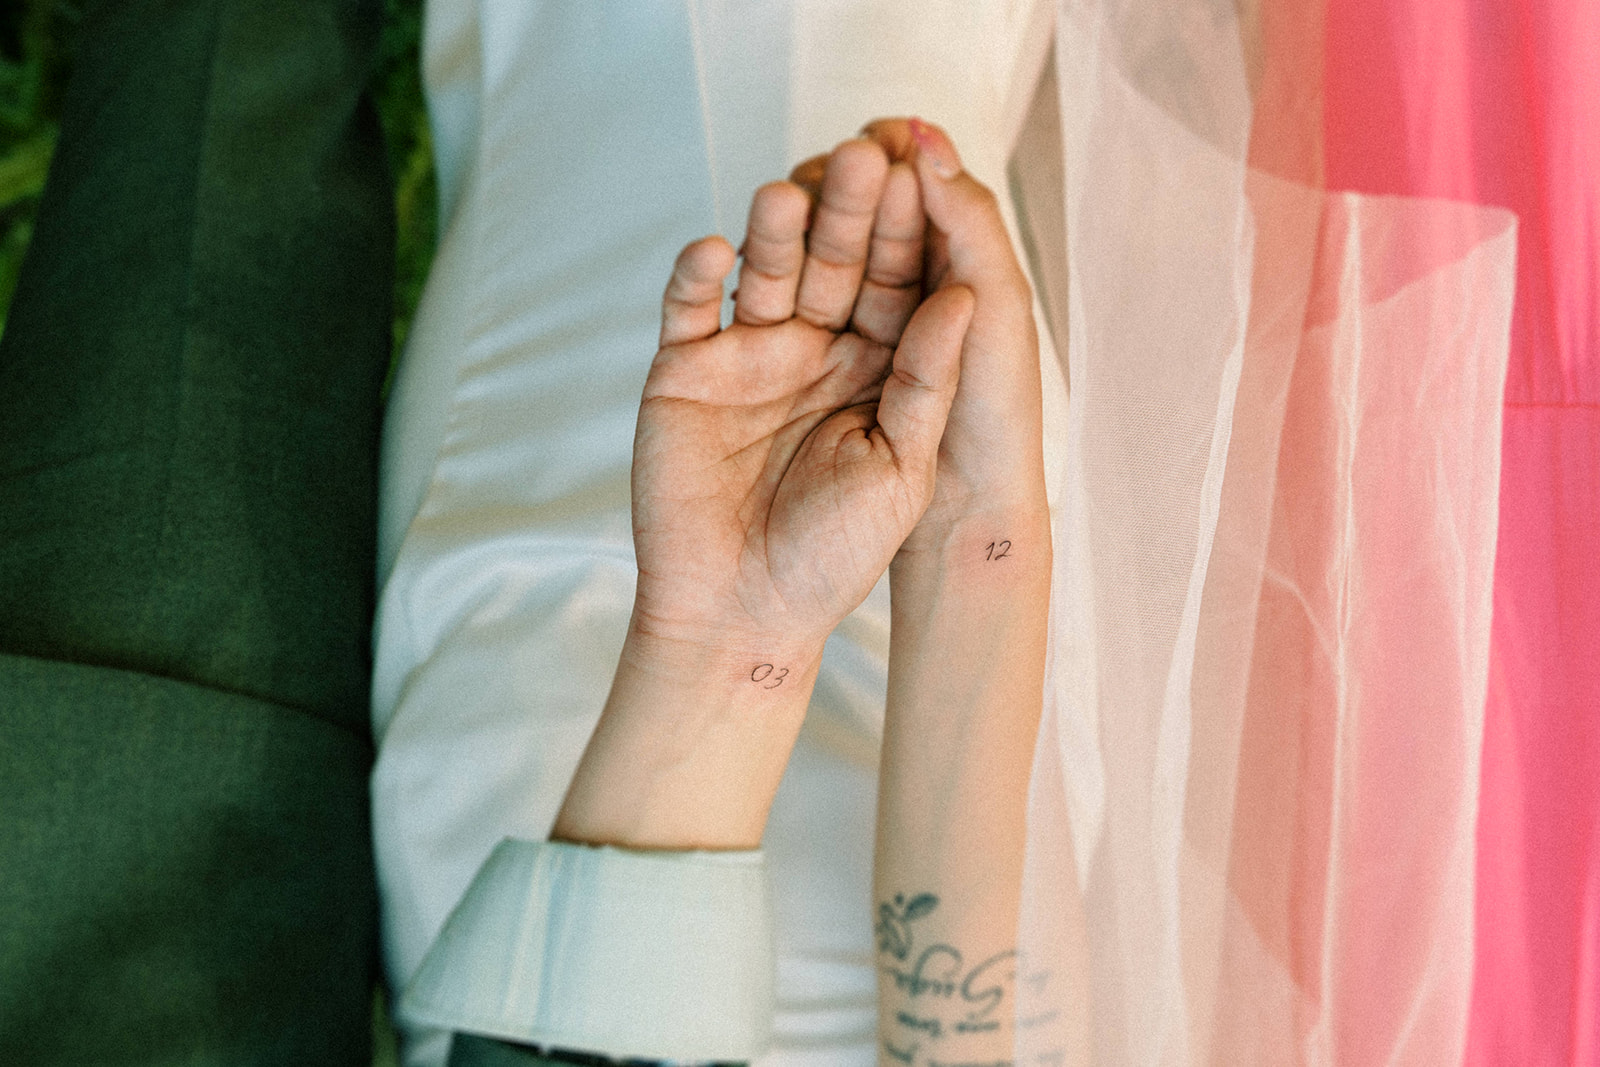 Fresh new couple tattoos to celebrate their marriage